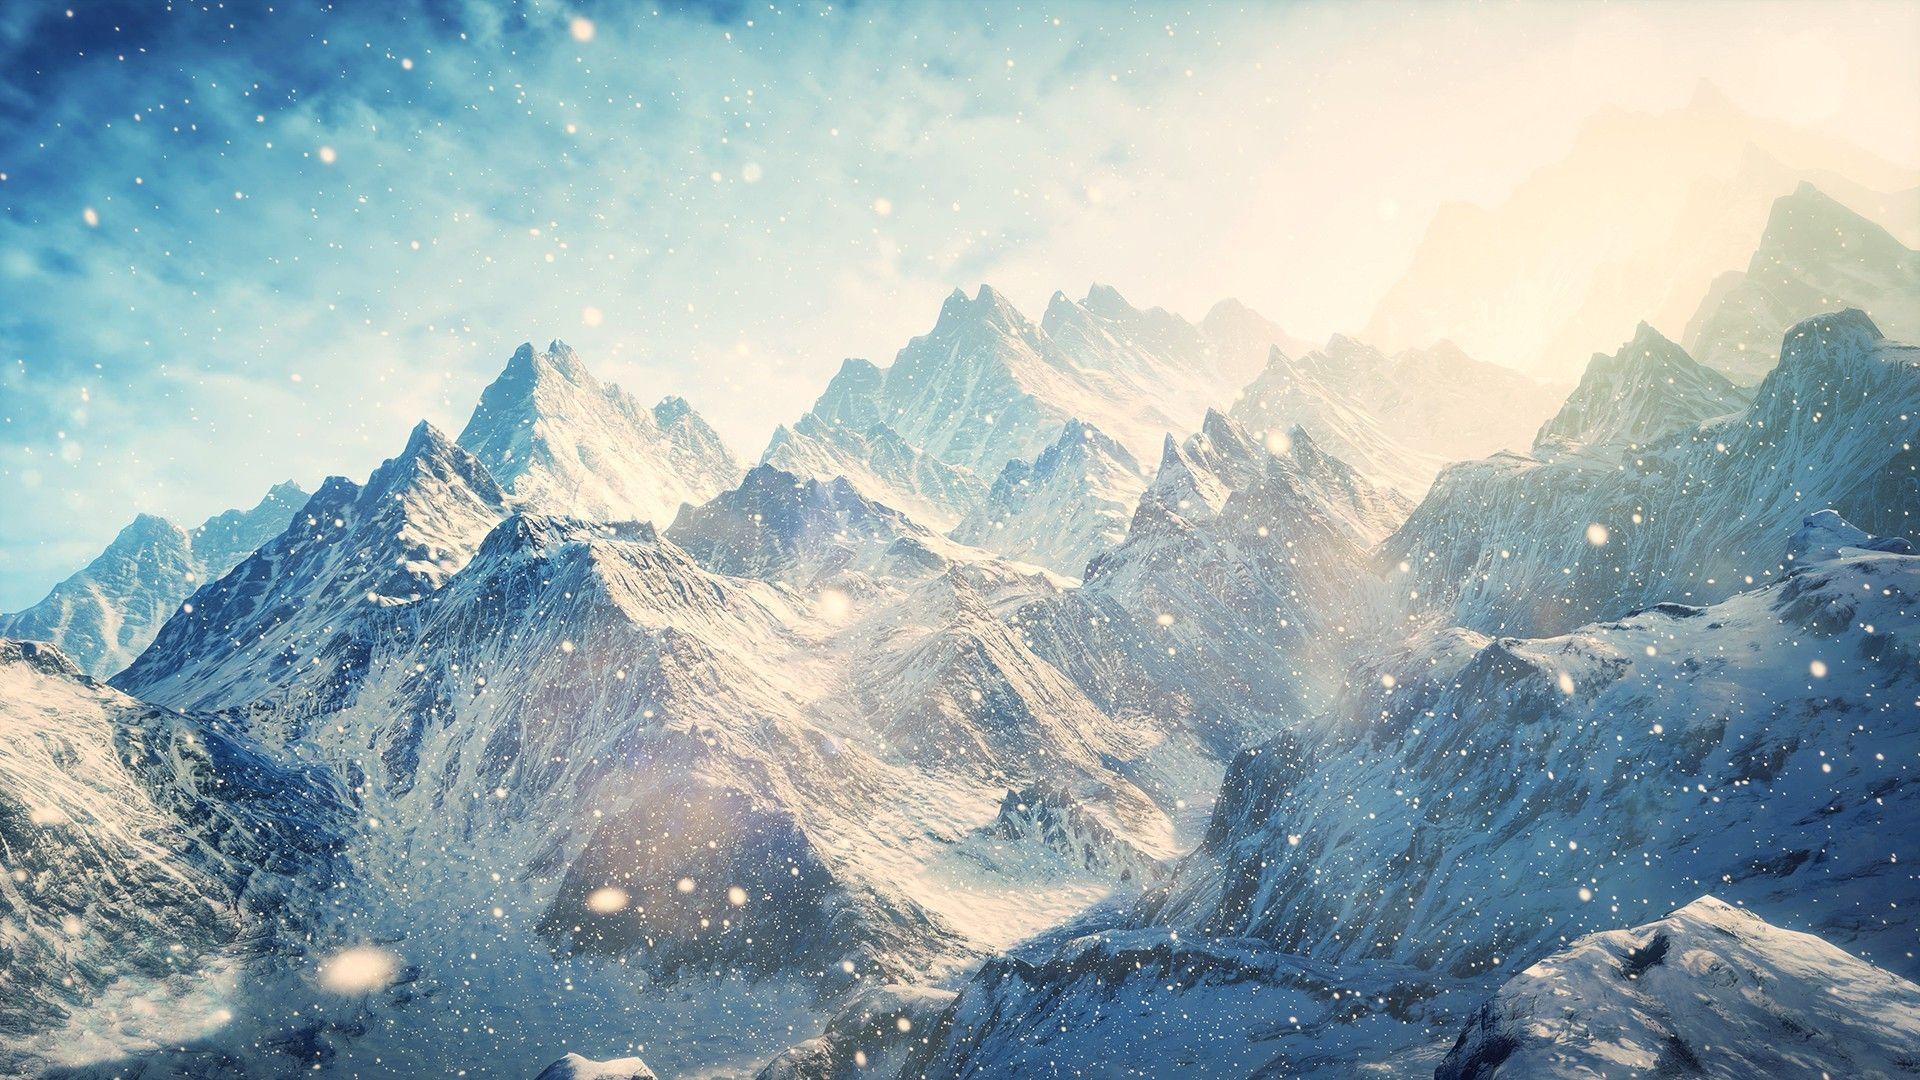 Snow Mountains Nature & Landscape desktop wallpaper. Mountain wallpaper, View wallpaper, Beautiful wallpaper